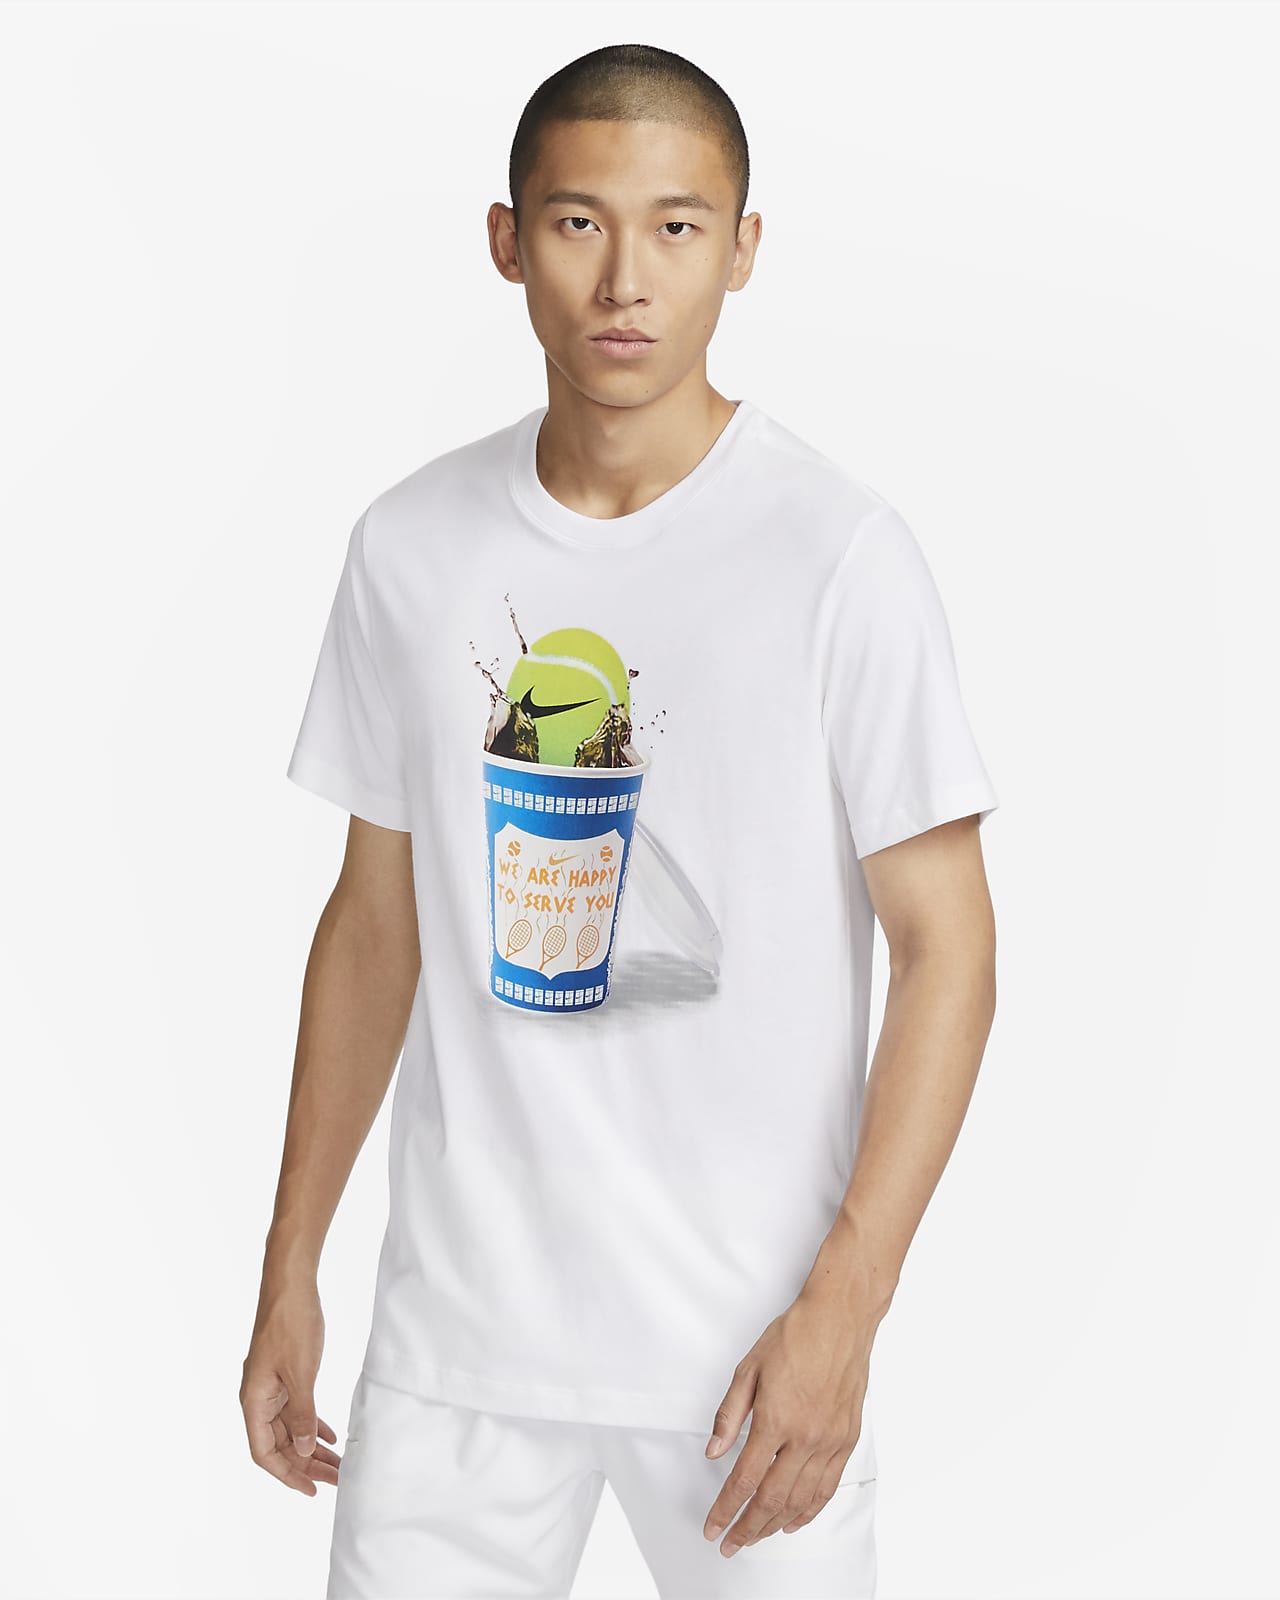 NIKE公式】ナイキコート メンズ テニス Tシャツ.オンラインストア (通販サイト)